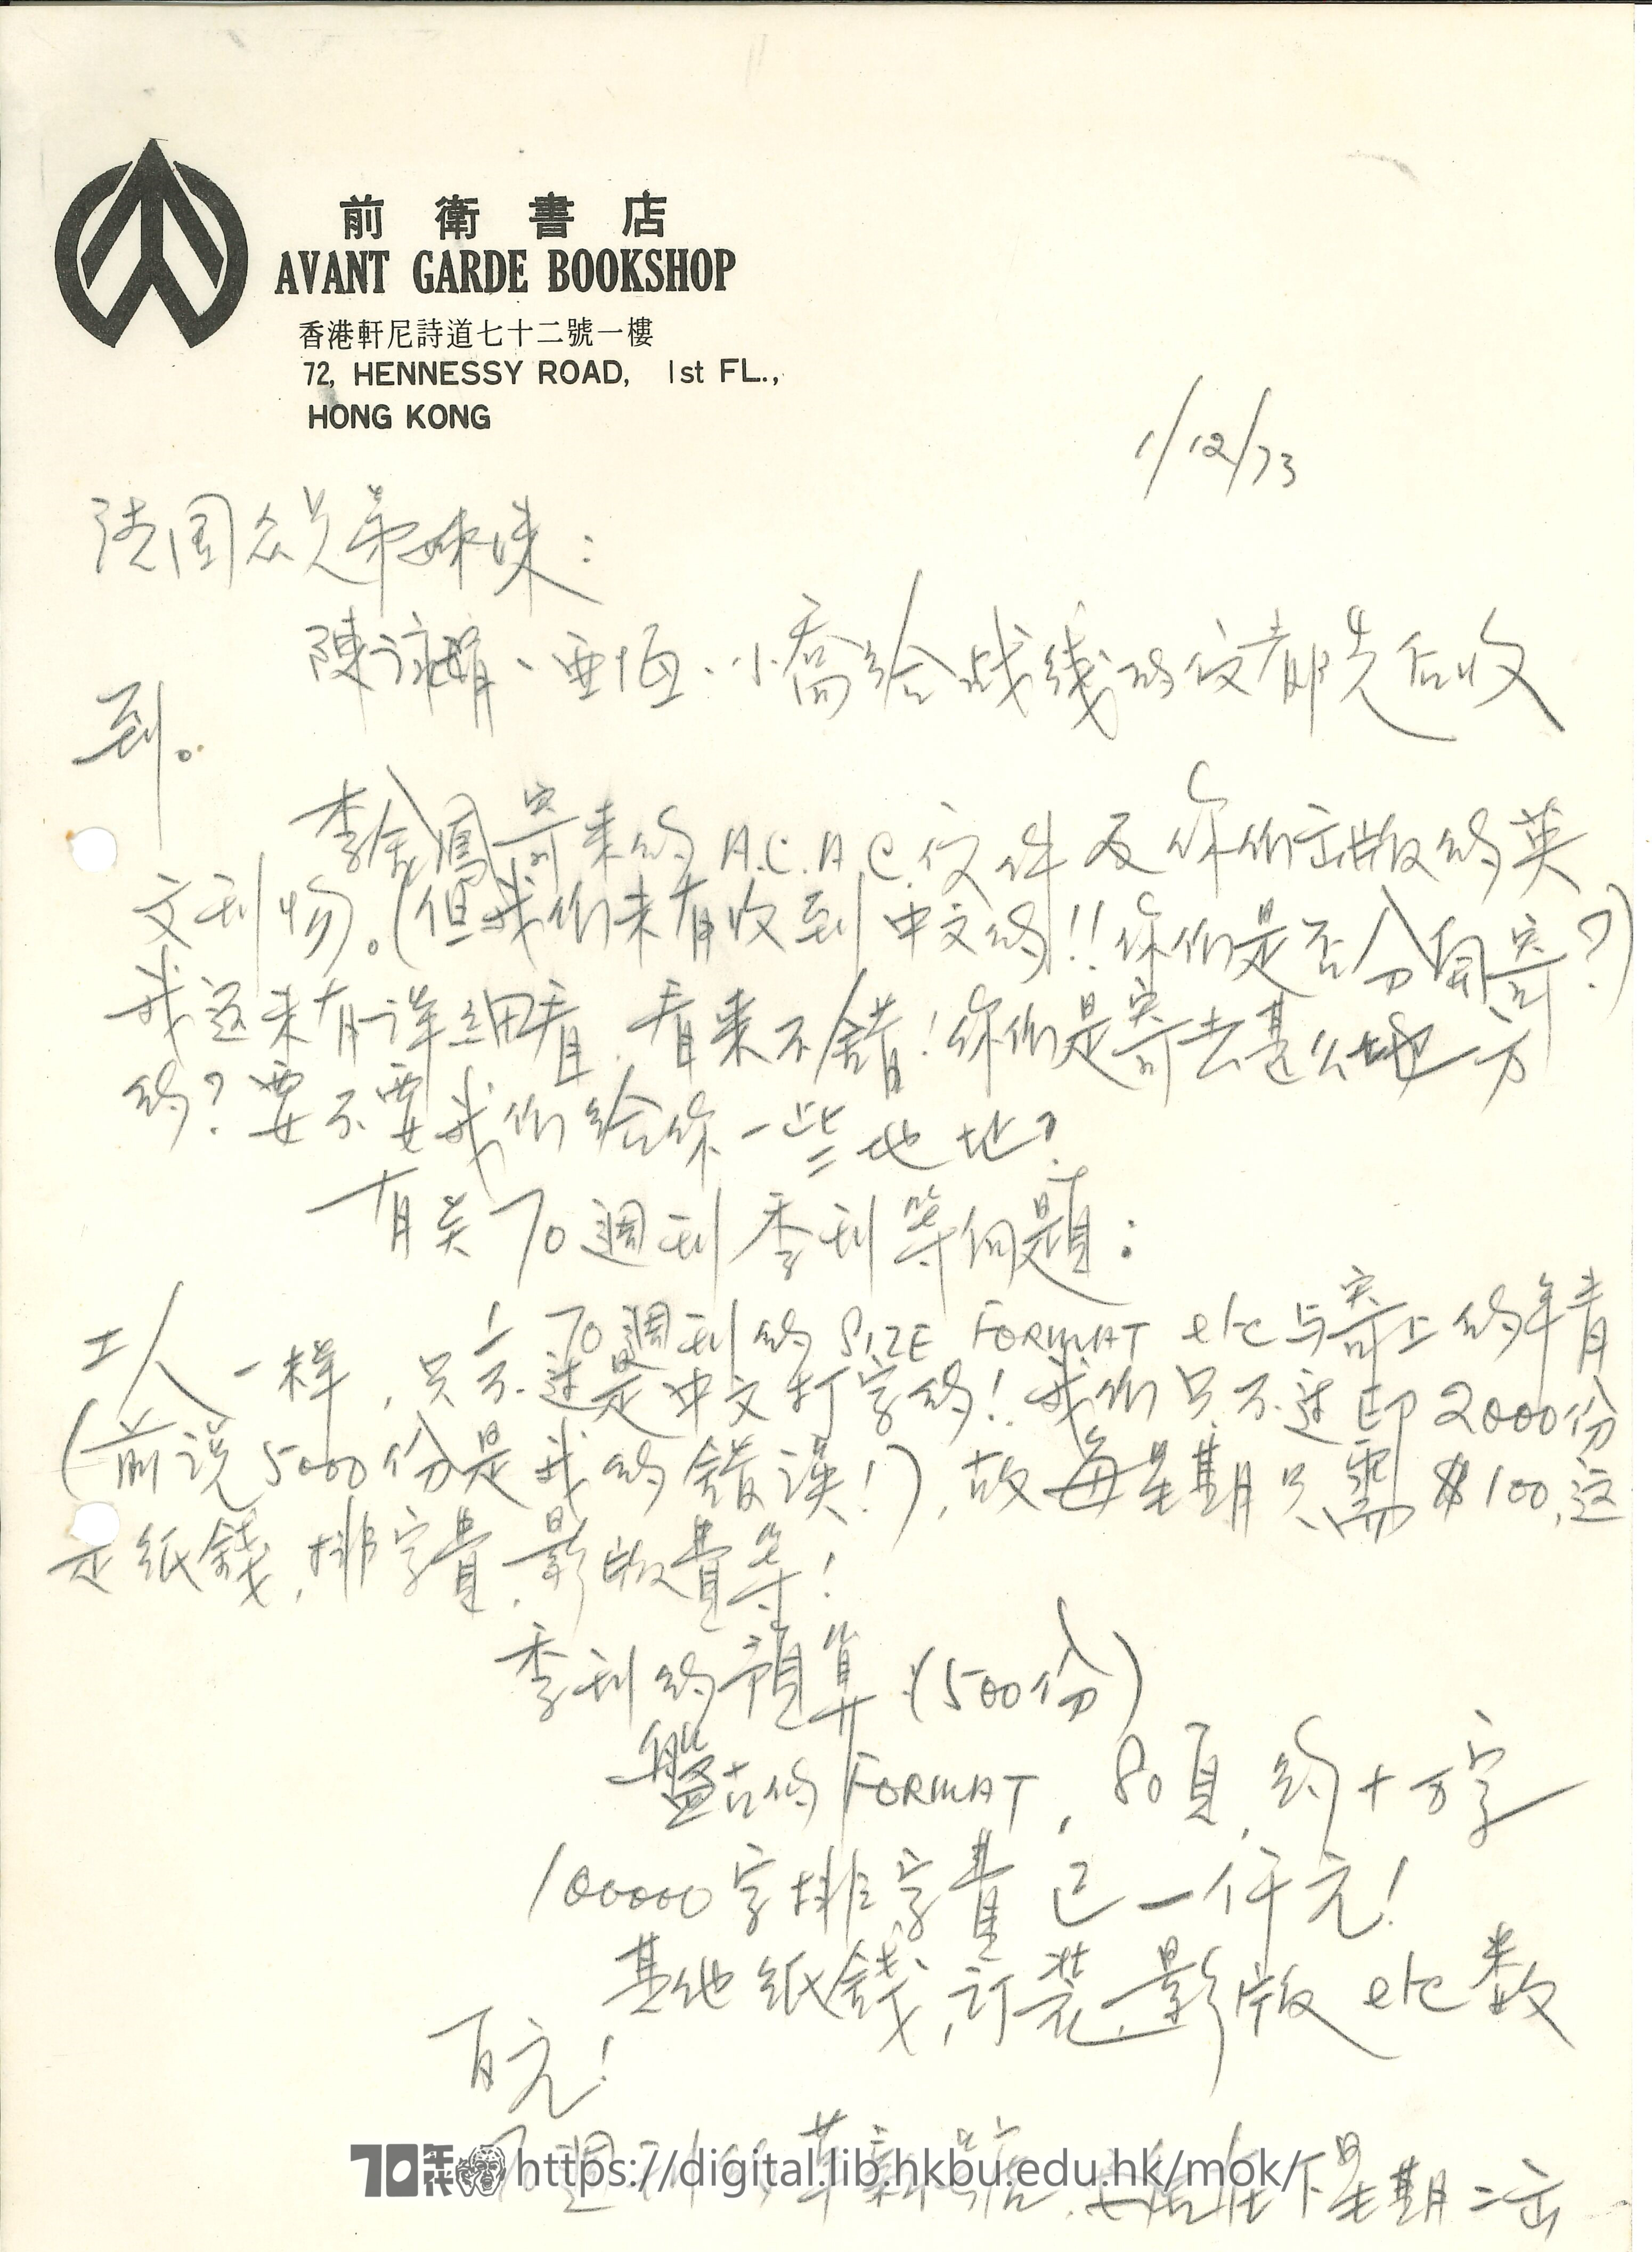   Letter from Mok Chiu Yu to members in France MOK, Chiu Yu 